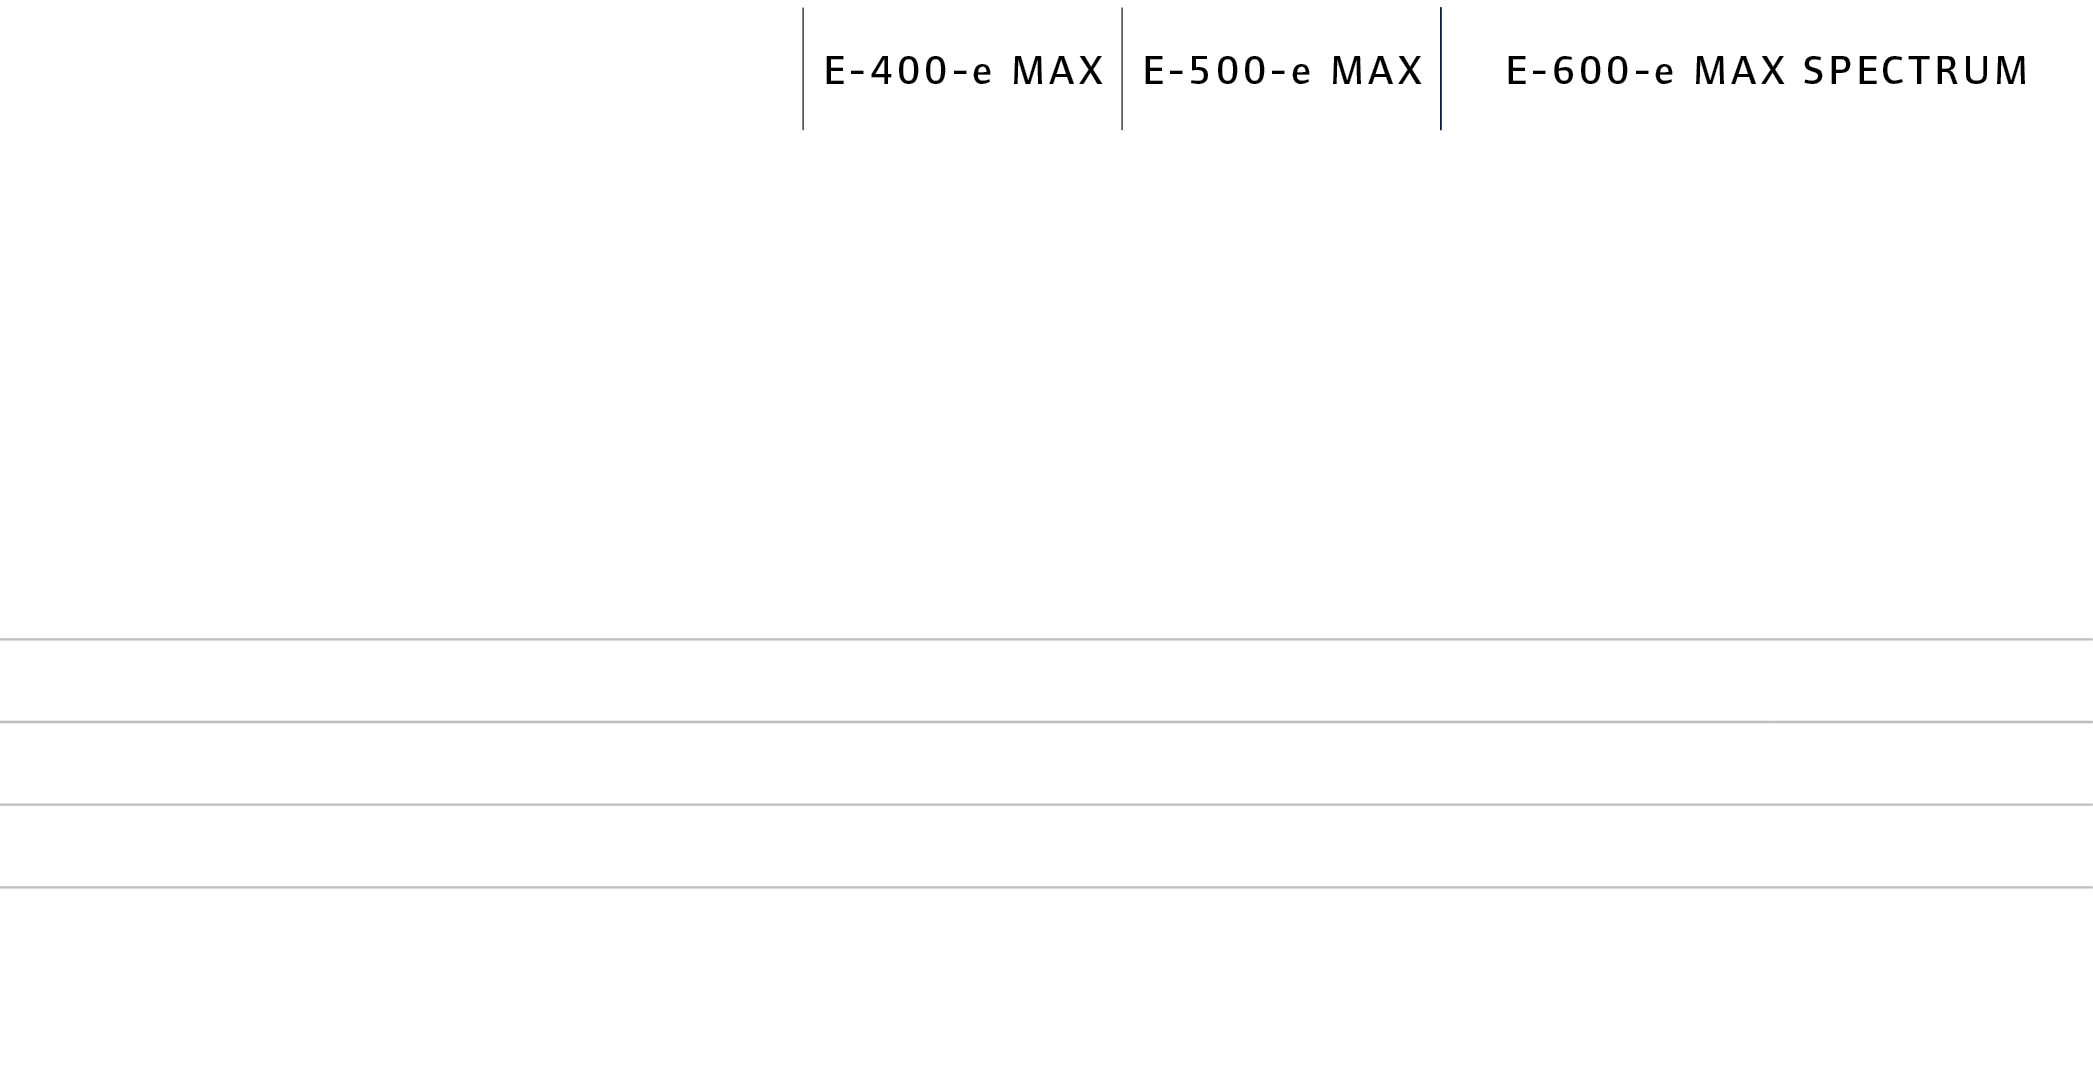 ,E-400-e MAX,E-500-e MAX,E-600-e MAX spectrum,,Single temperature,Single temperature,Multi-temperature,Evaporator Con...